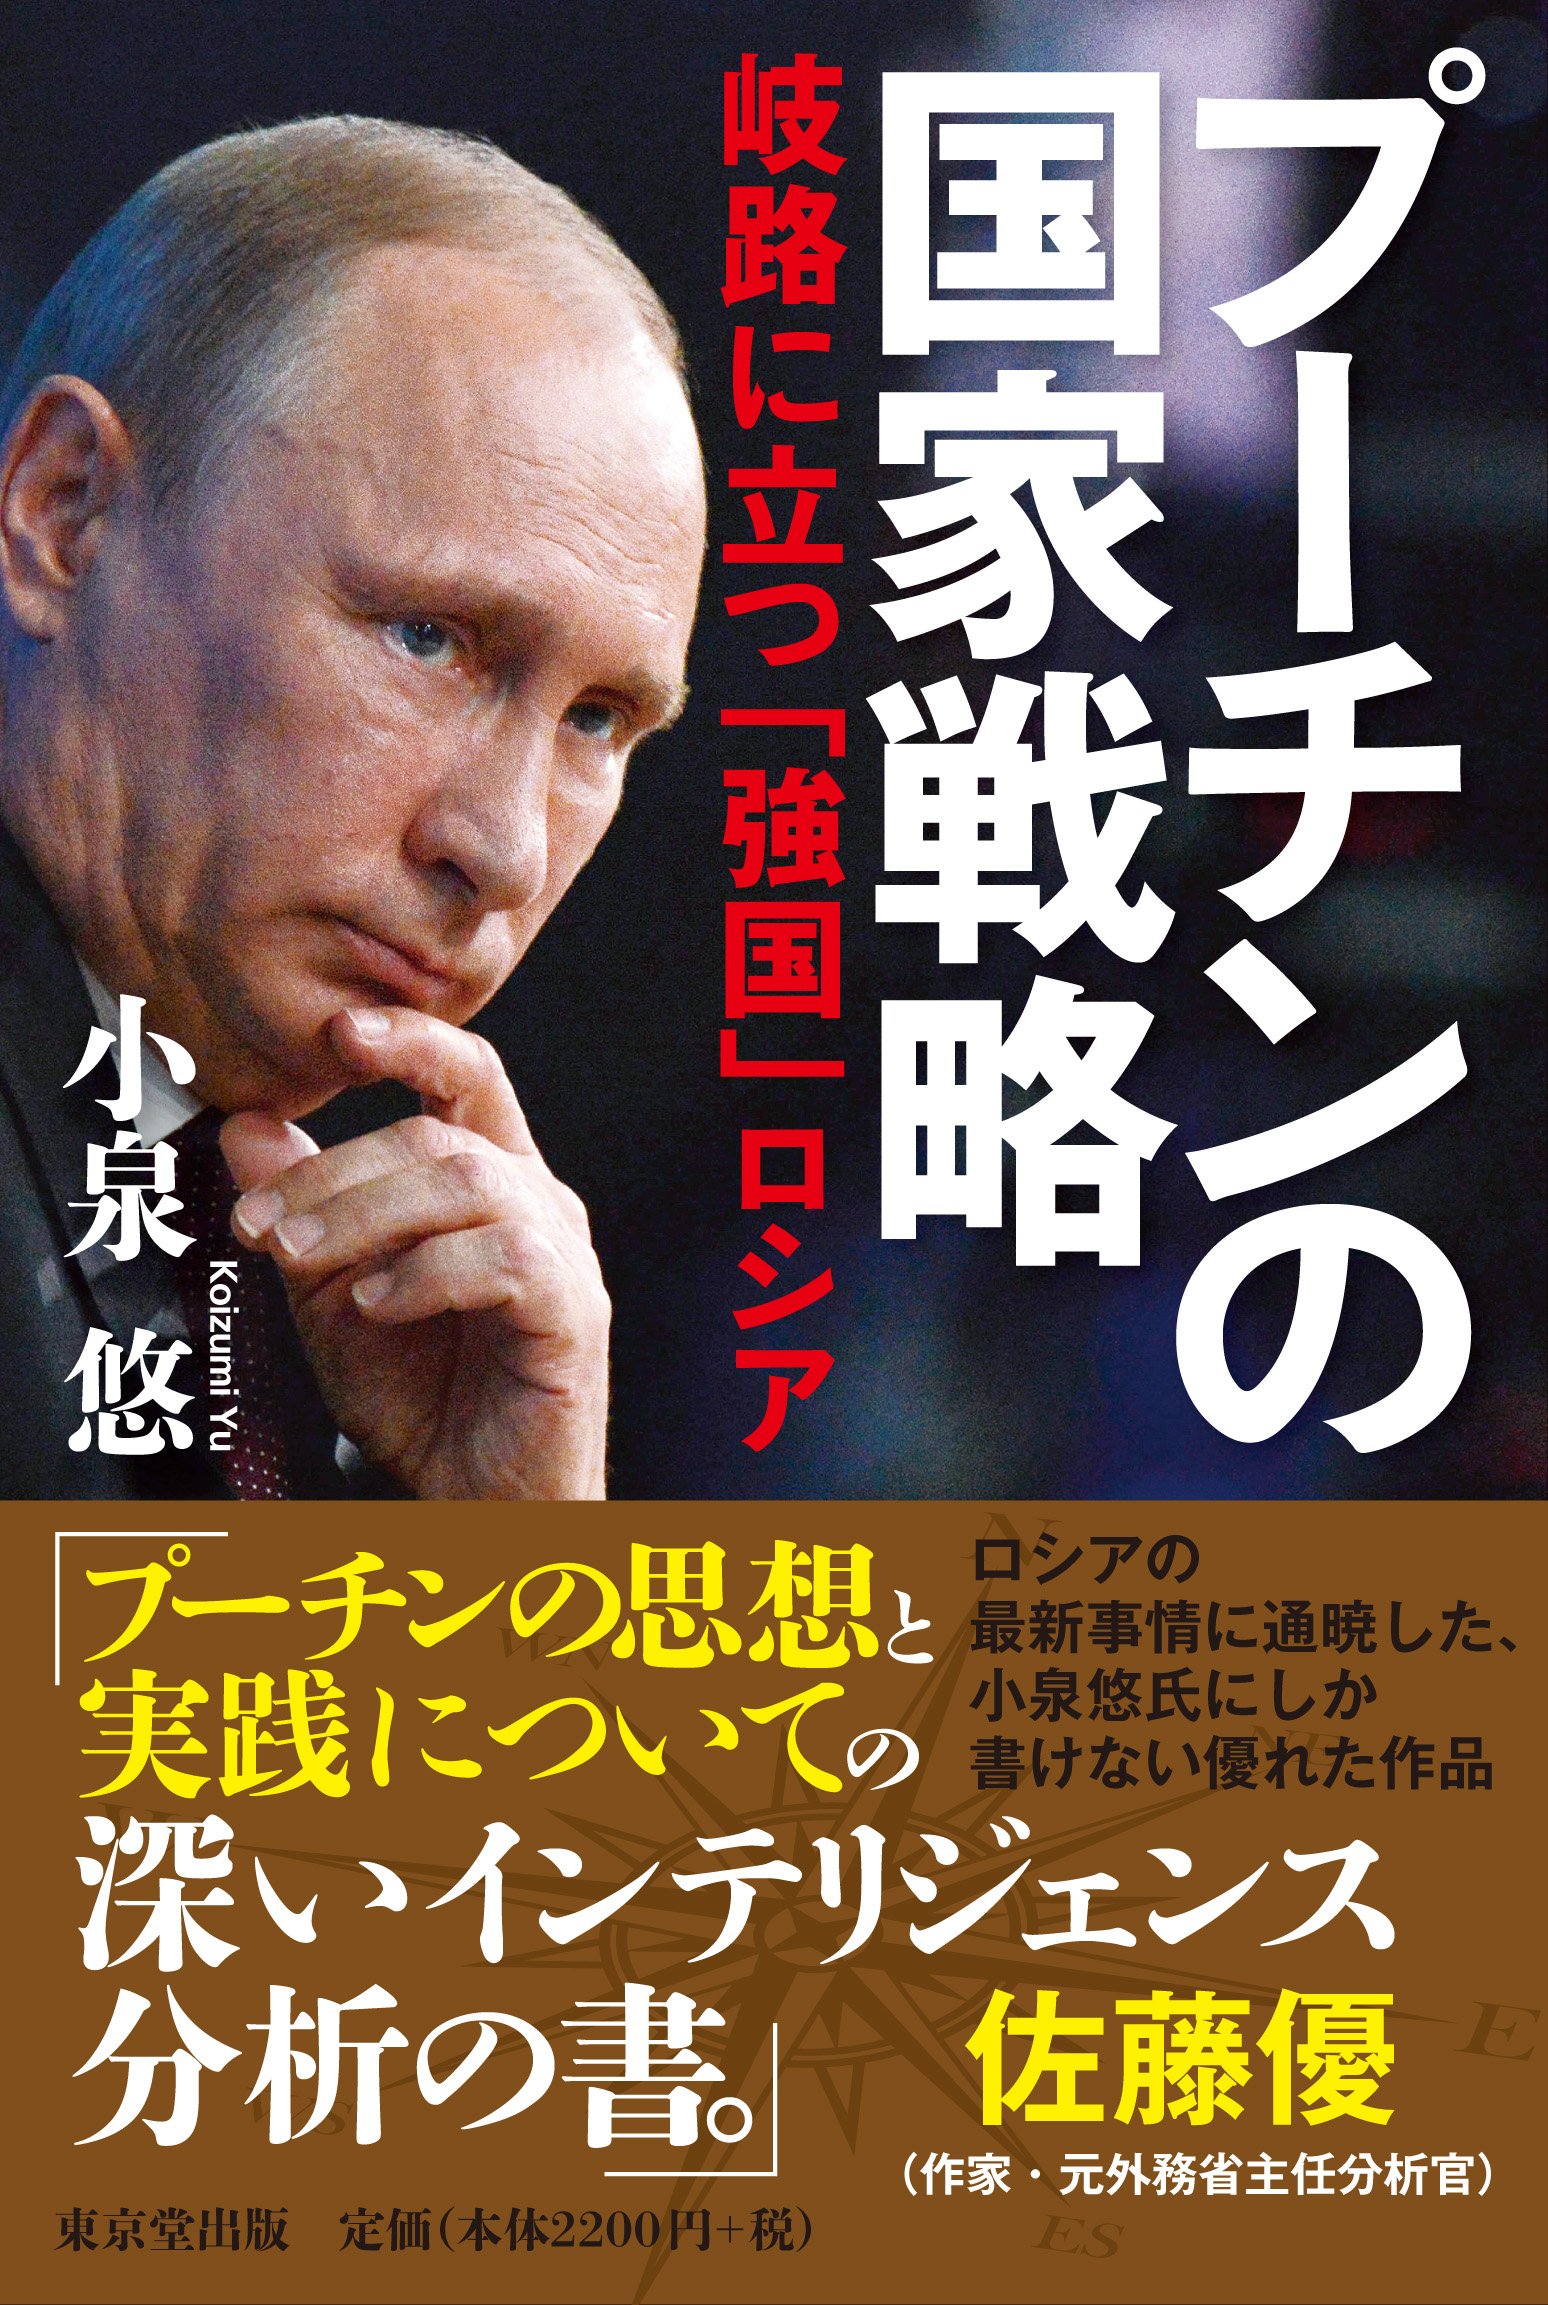 プーチンの国家戦略 岐路に立つ「強国」ロシア